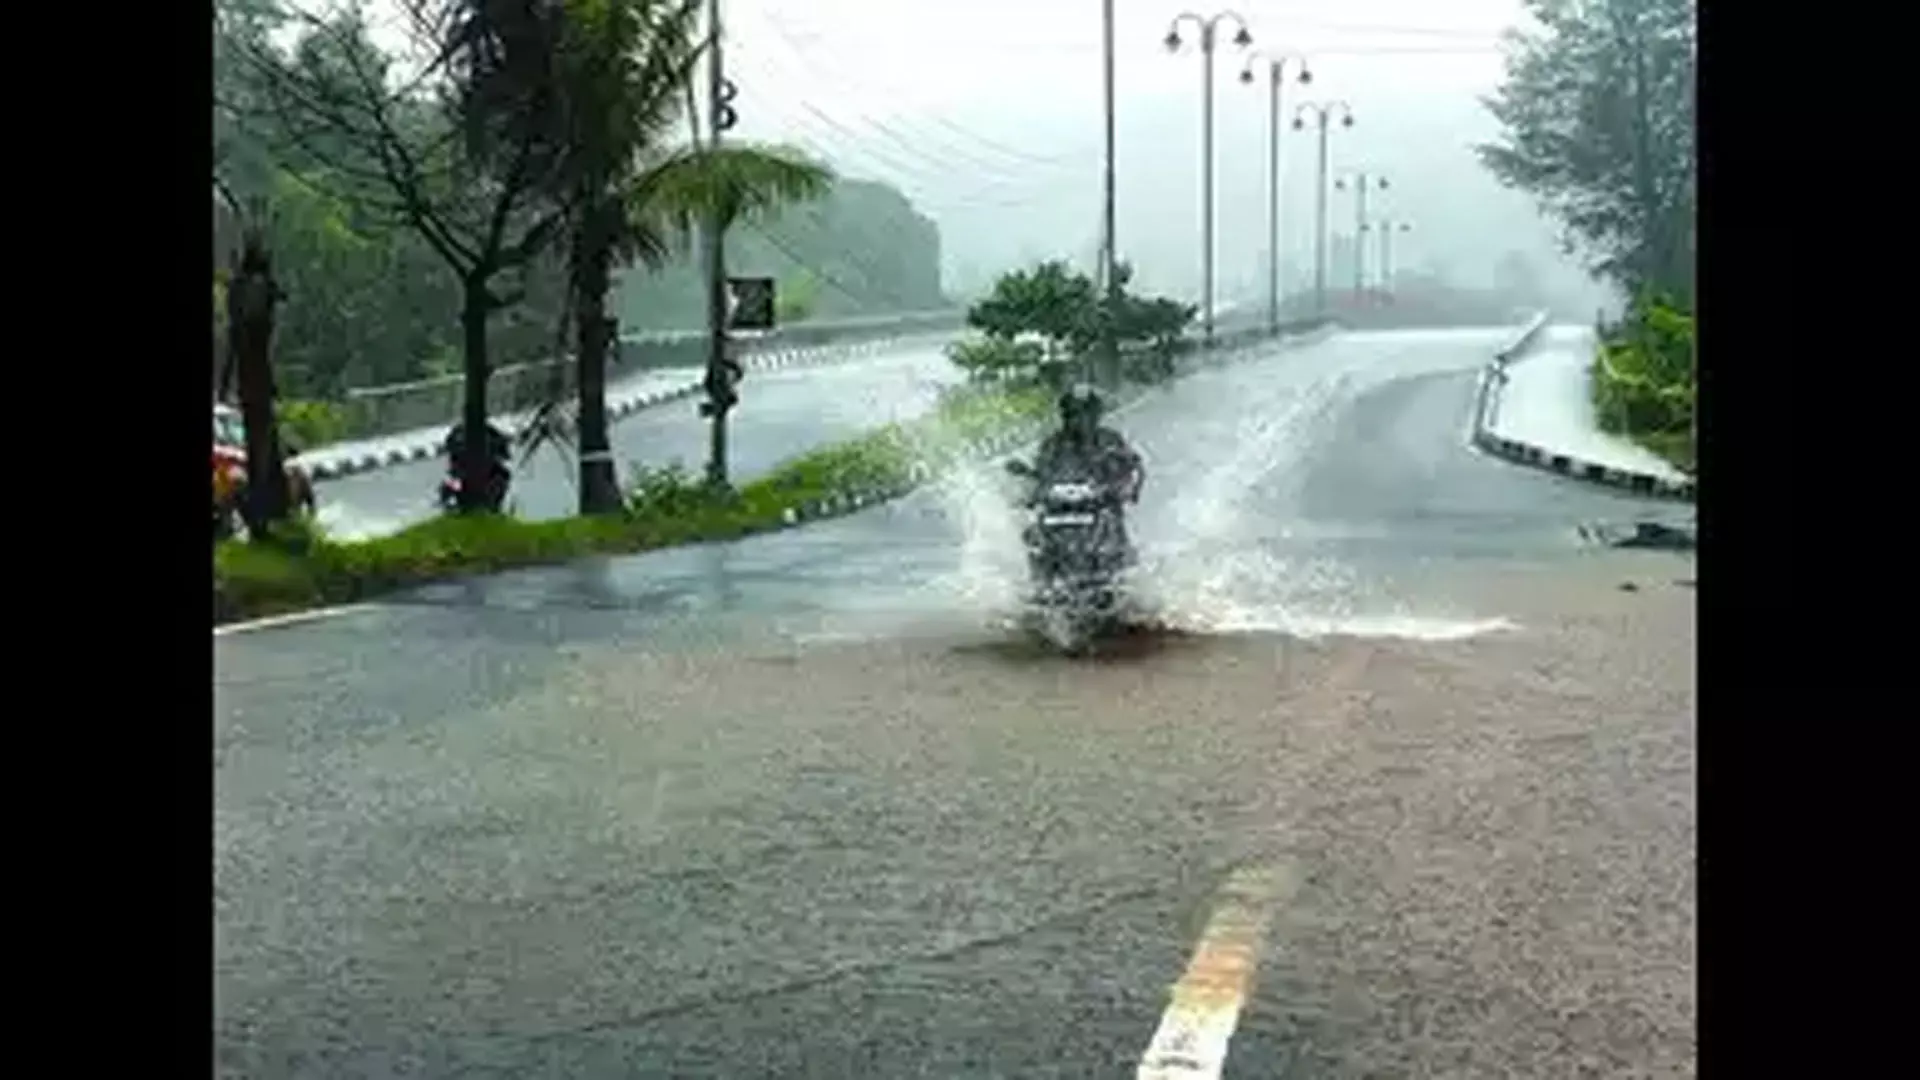 BENGALURU: आईएमडी ने कर्नाटक के जिलों में भारी बारिश के लिए ऑरेंज अलर्ट जारी किया